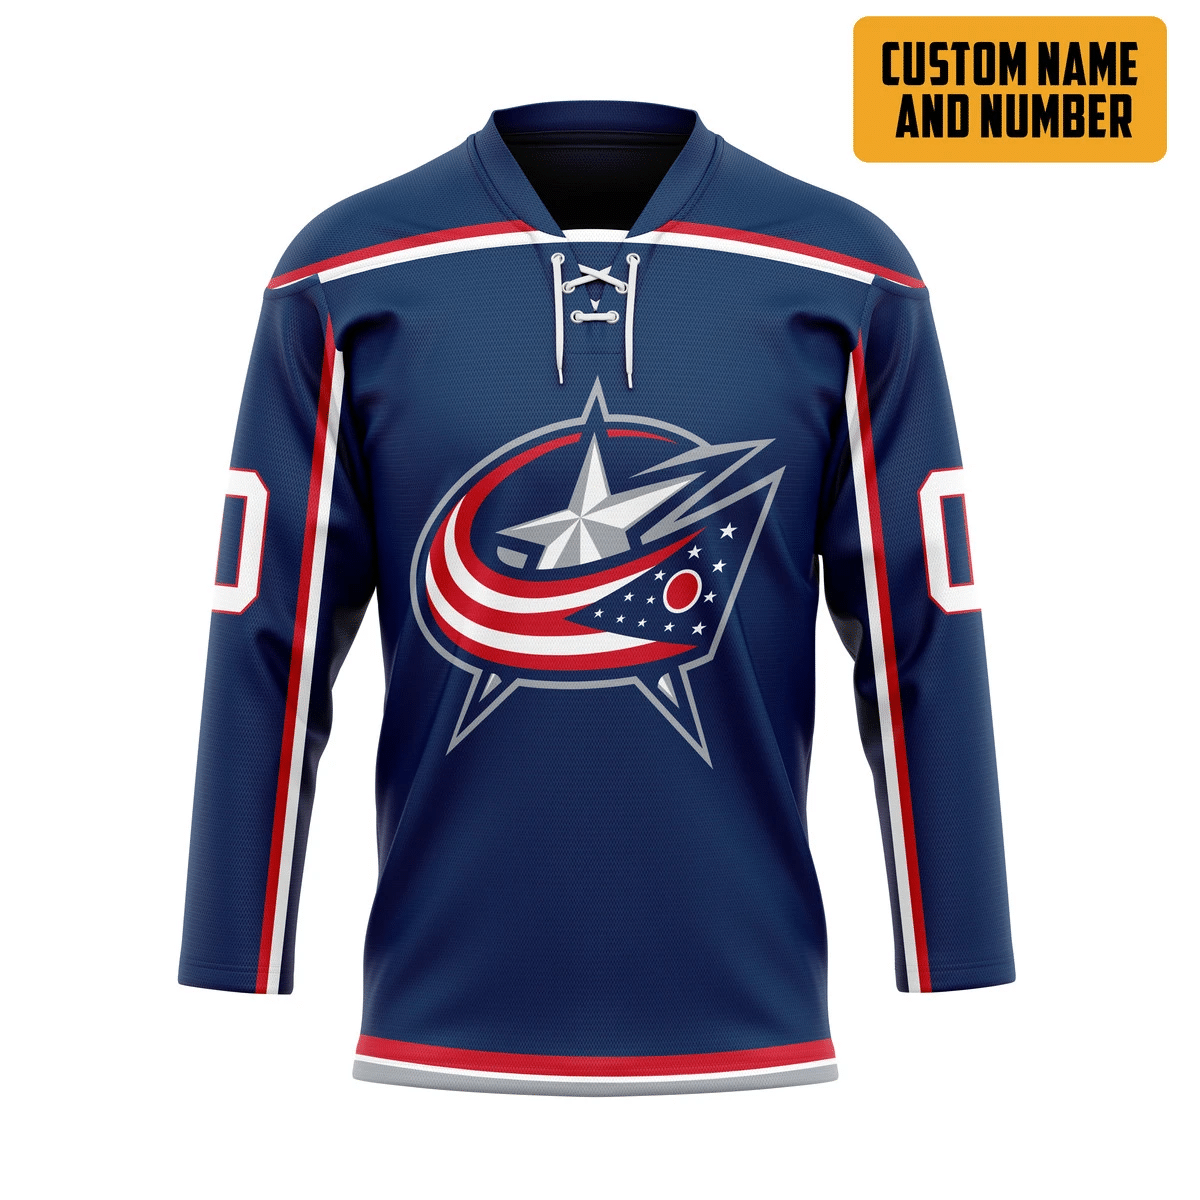 It's only $50 so don't miss out - Be sure to pick up a new hockey shirt today! 393